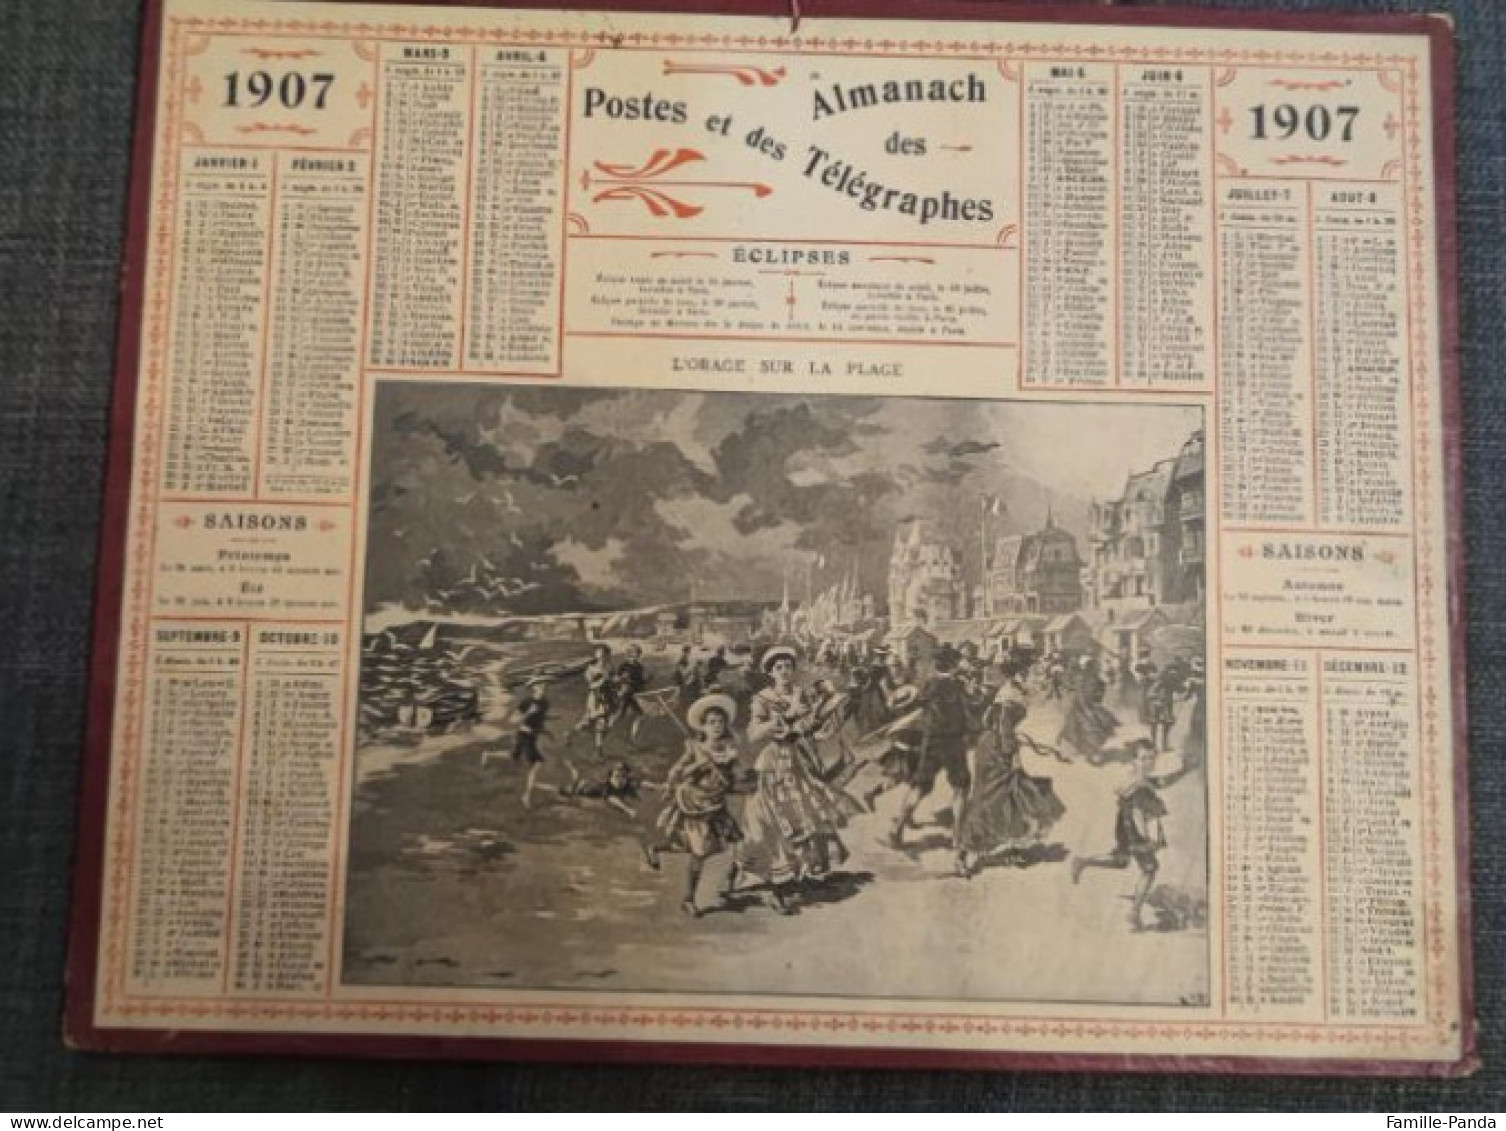 Calendrier PTT ALMANACH 1907 Des Postes Et Télégraphes 45 Loiret - L'orage Sur La Plage - Oberthur - Grand Format : 1901-20